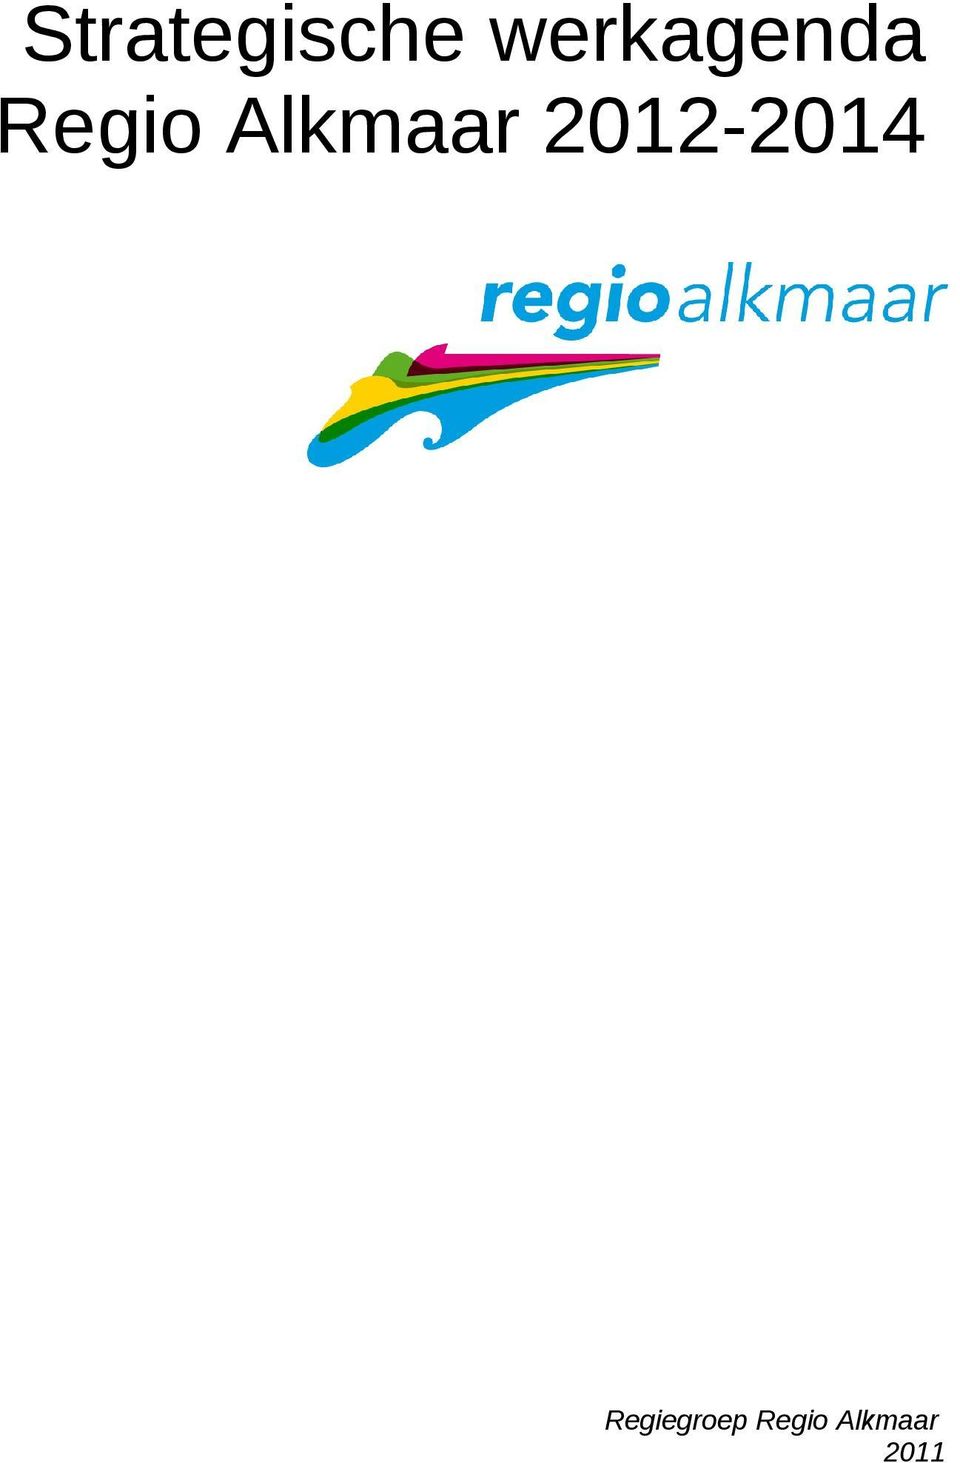 Alkmaar 2012-2014